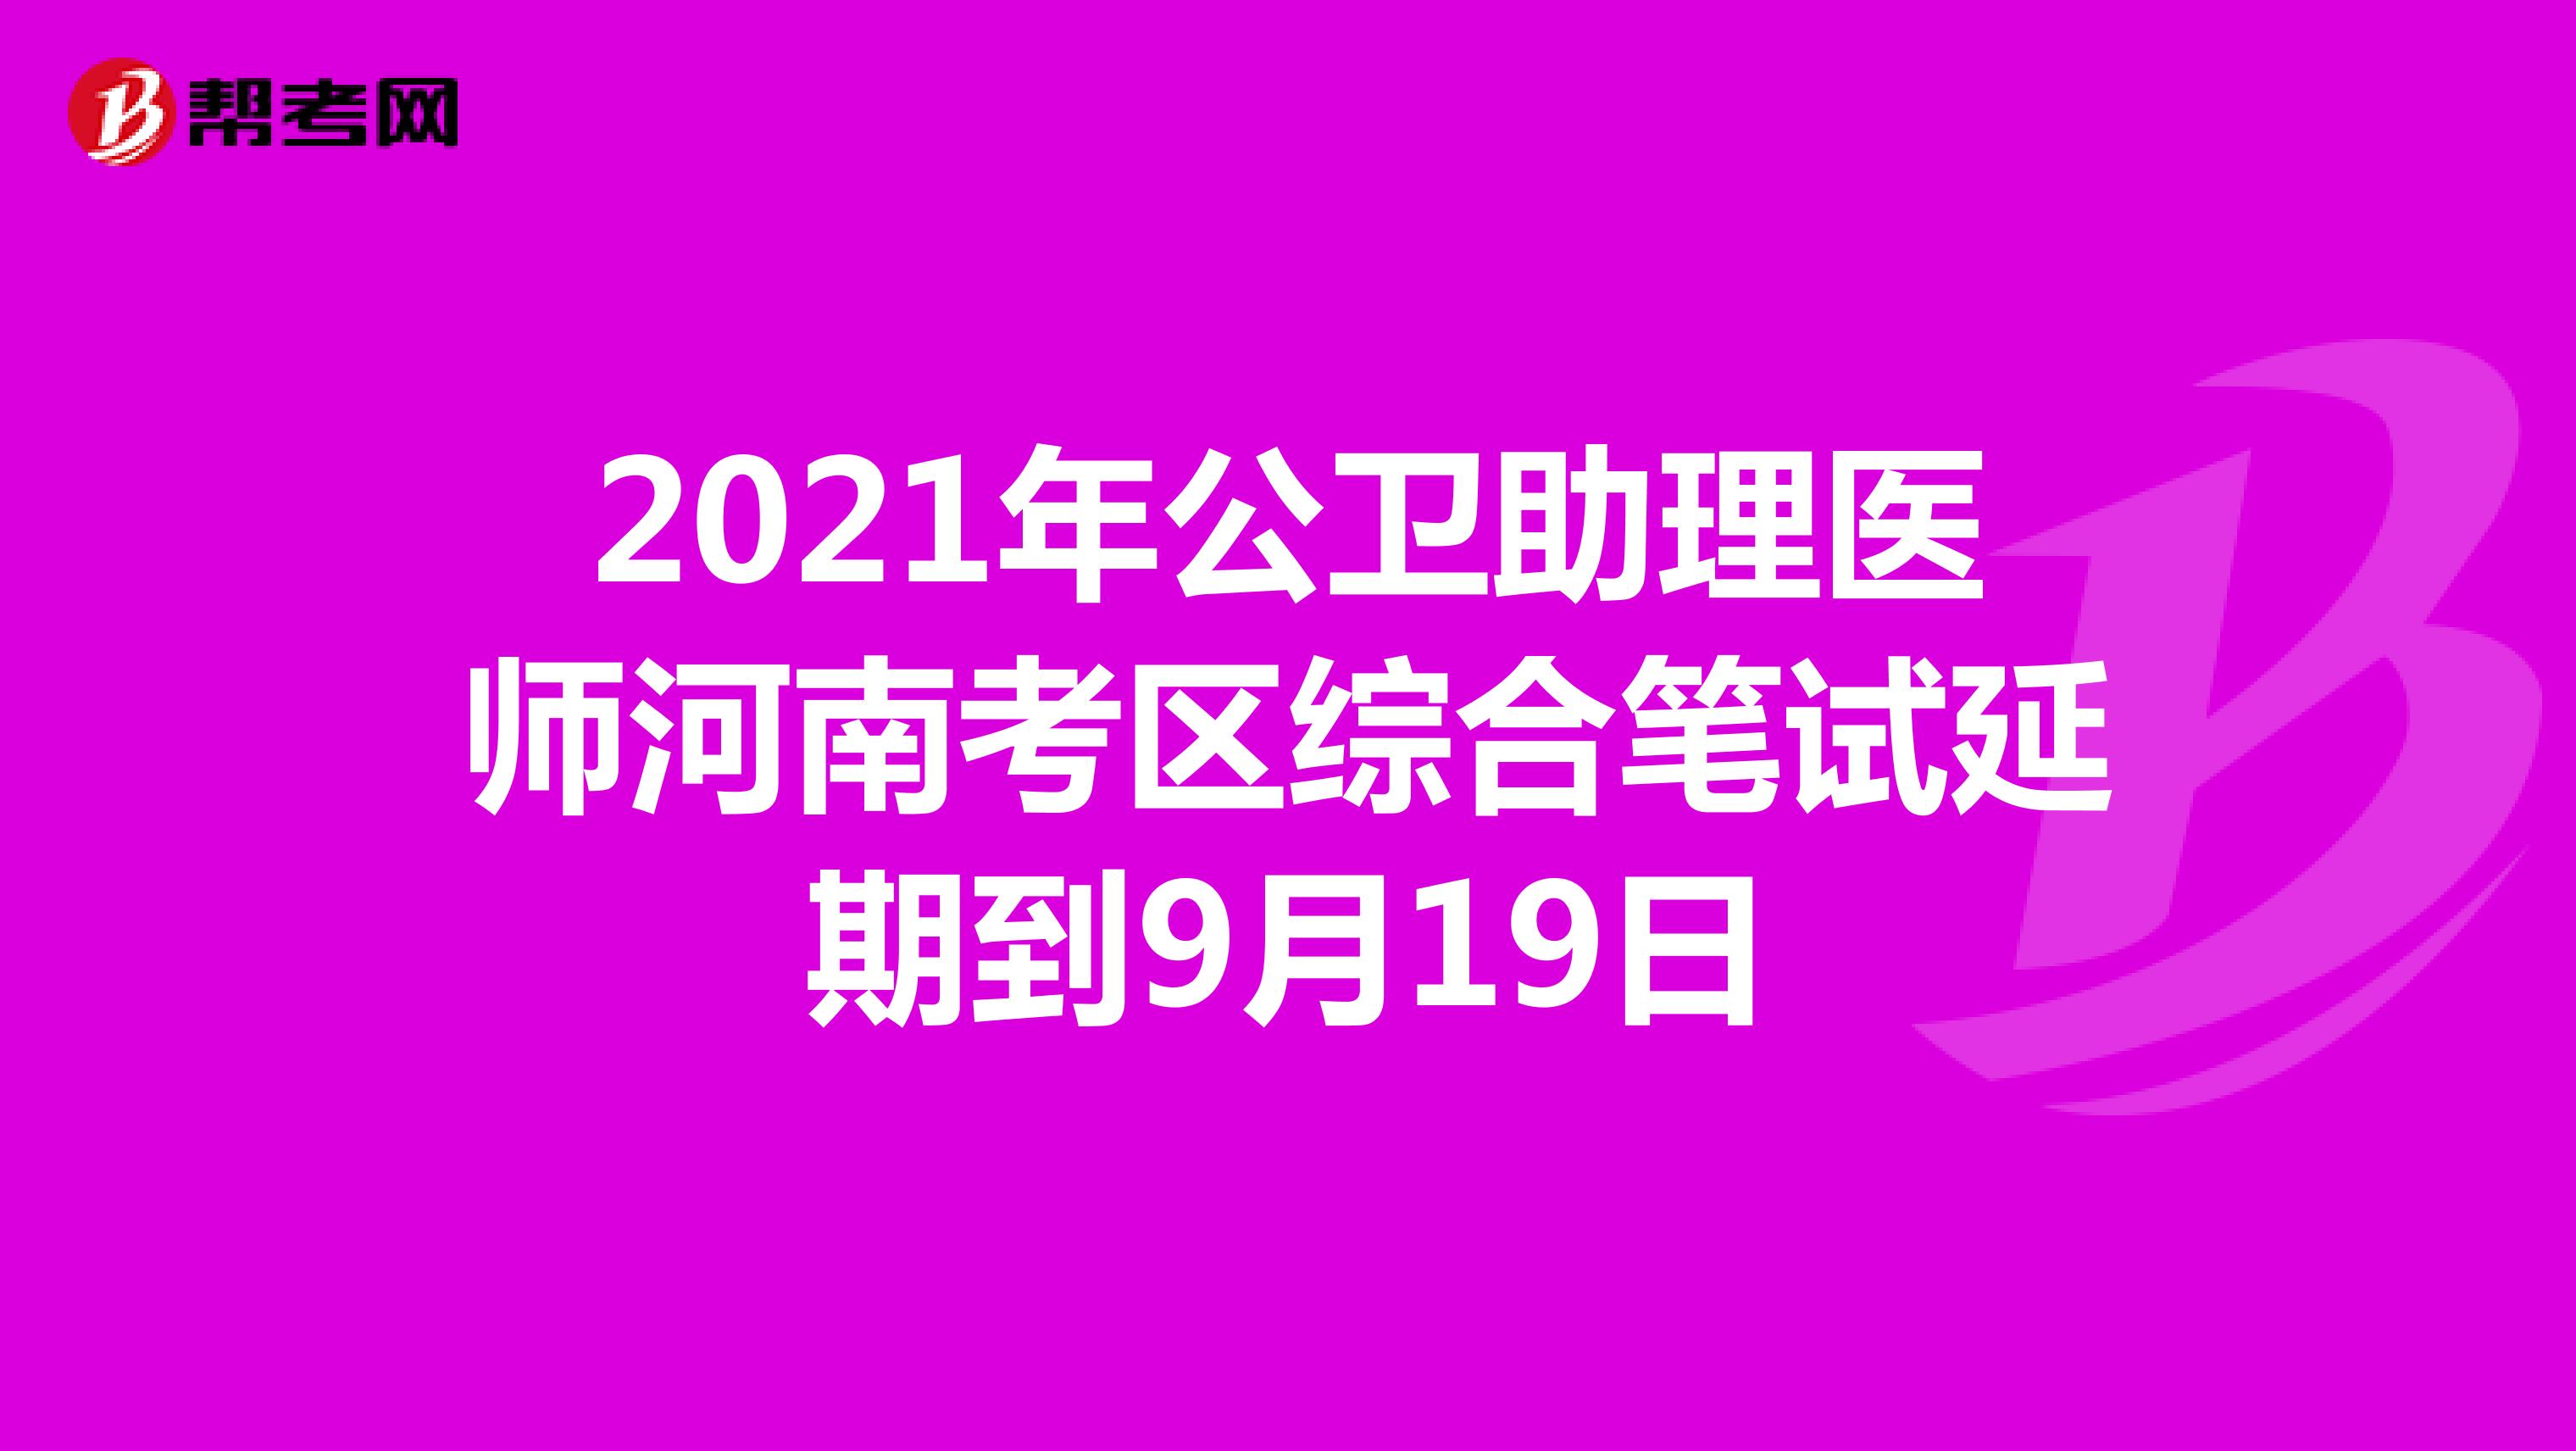 2021年公卫助理医师河南考区综合笔试延期到9月19日